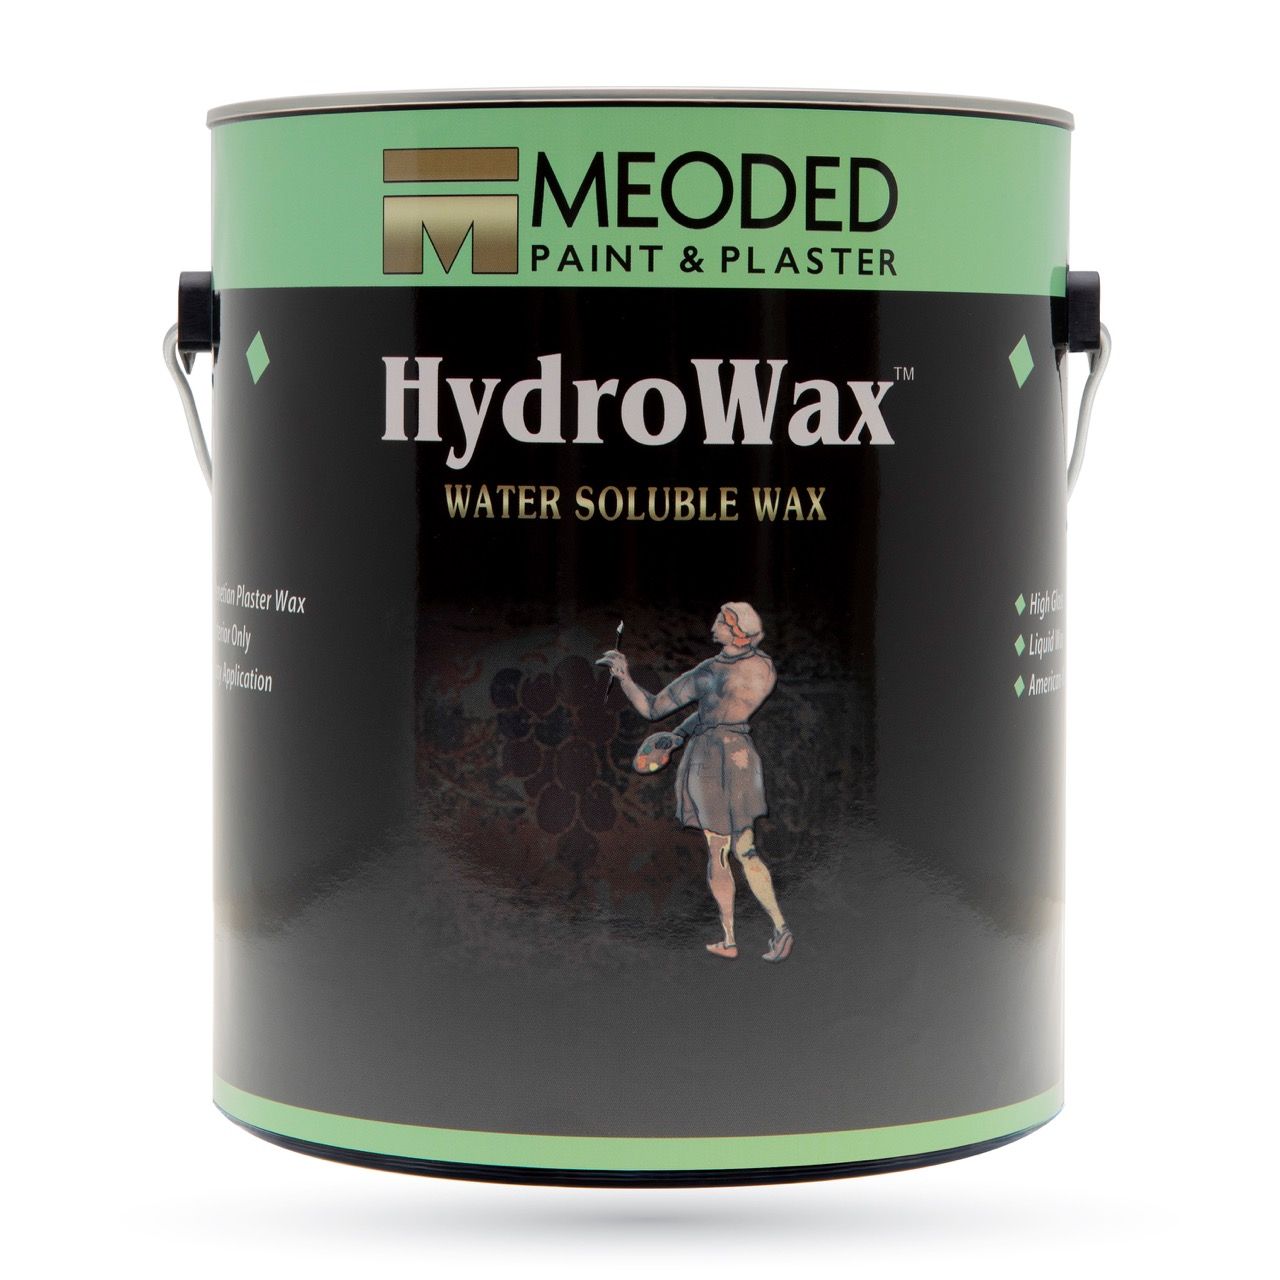 Hydrowax